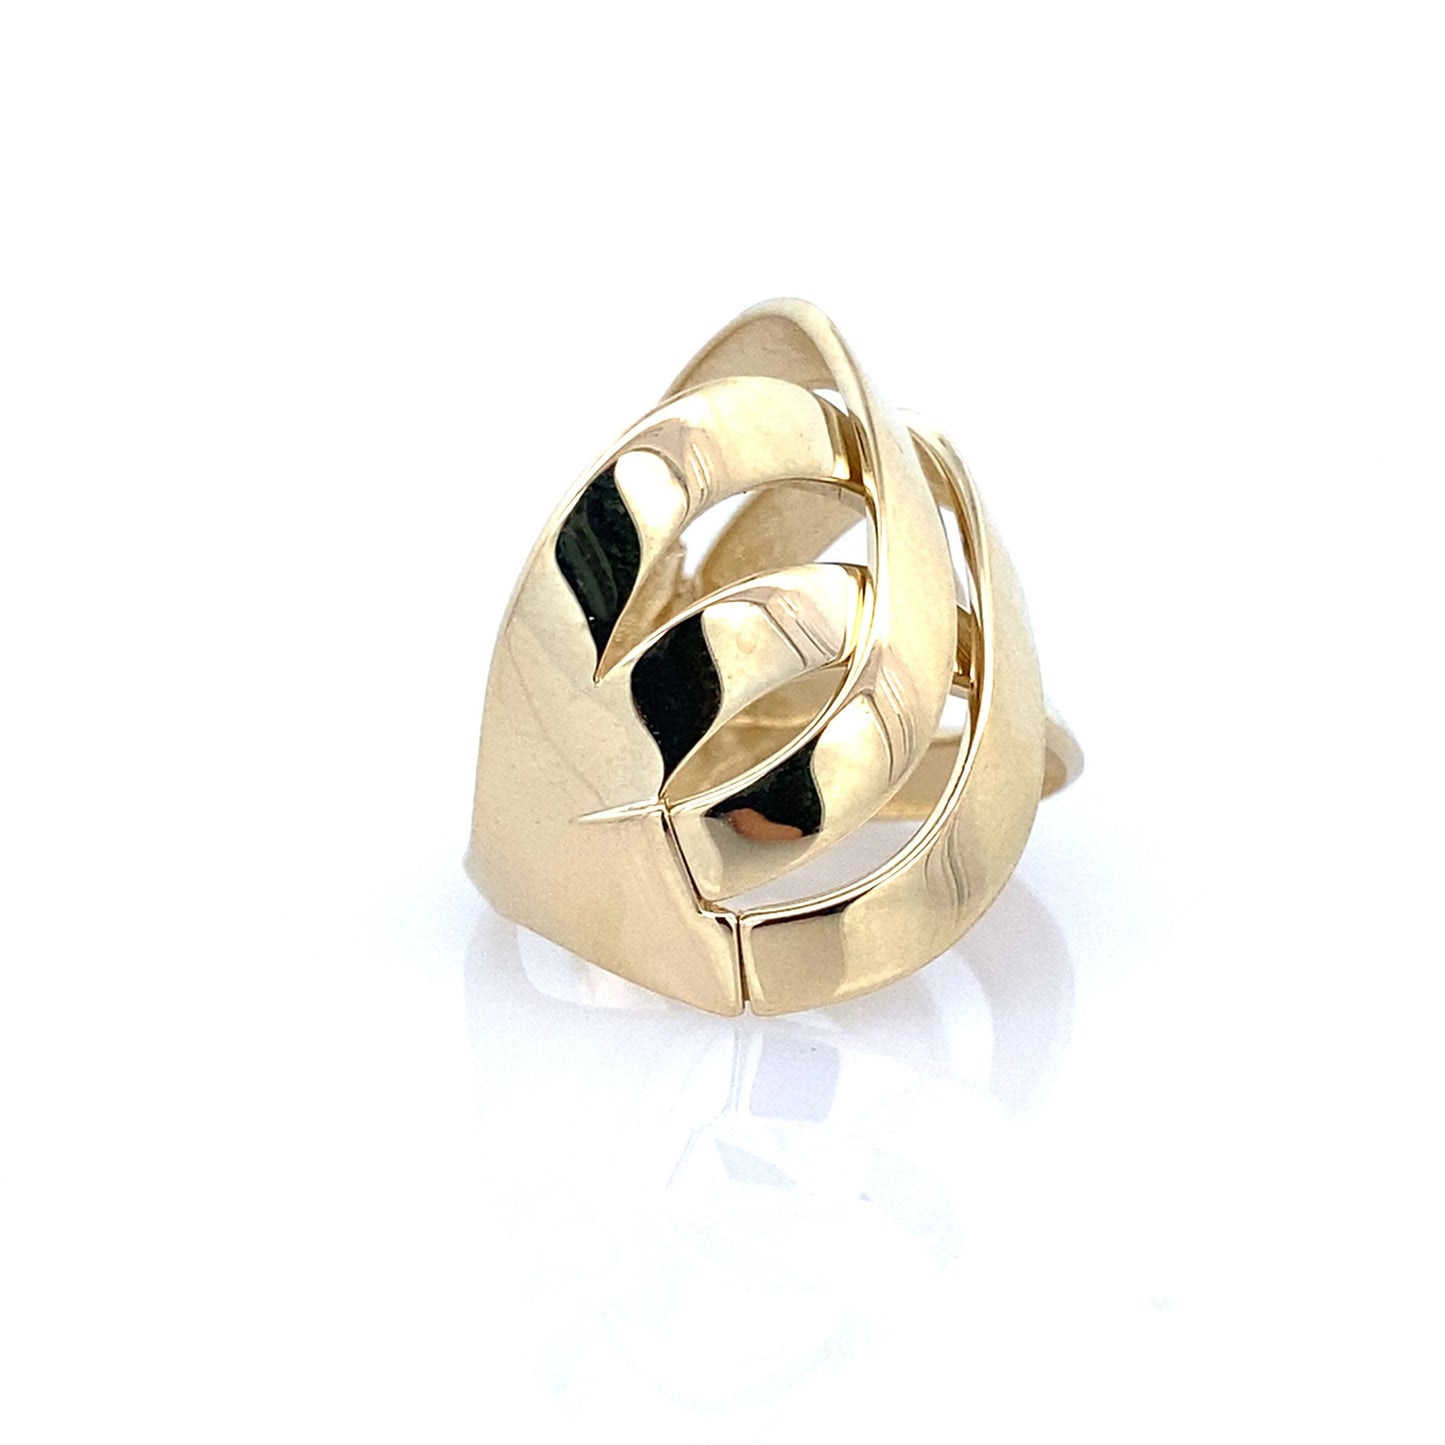 10K Yellow Gold Ladies Fashion Ring Size 6.25